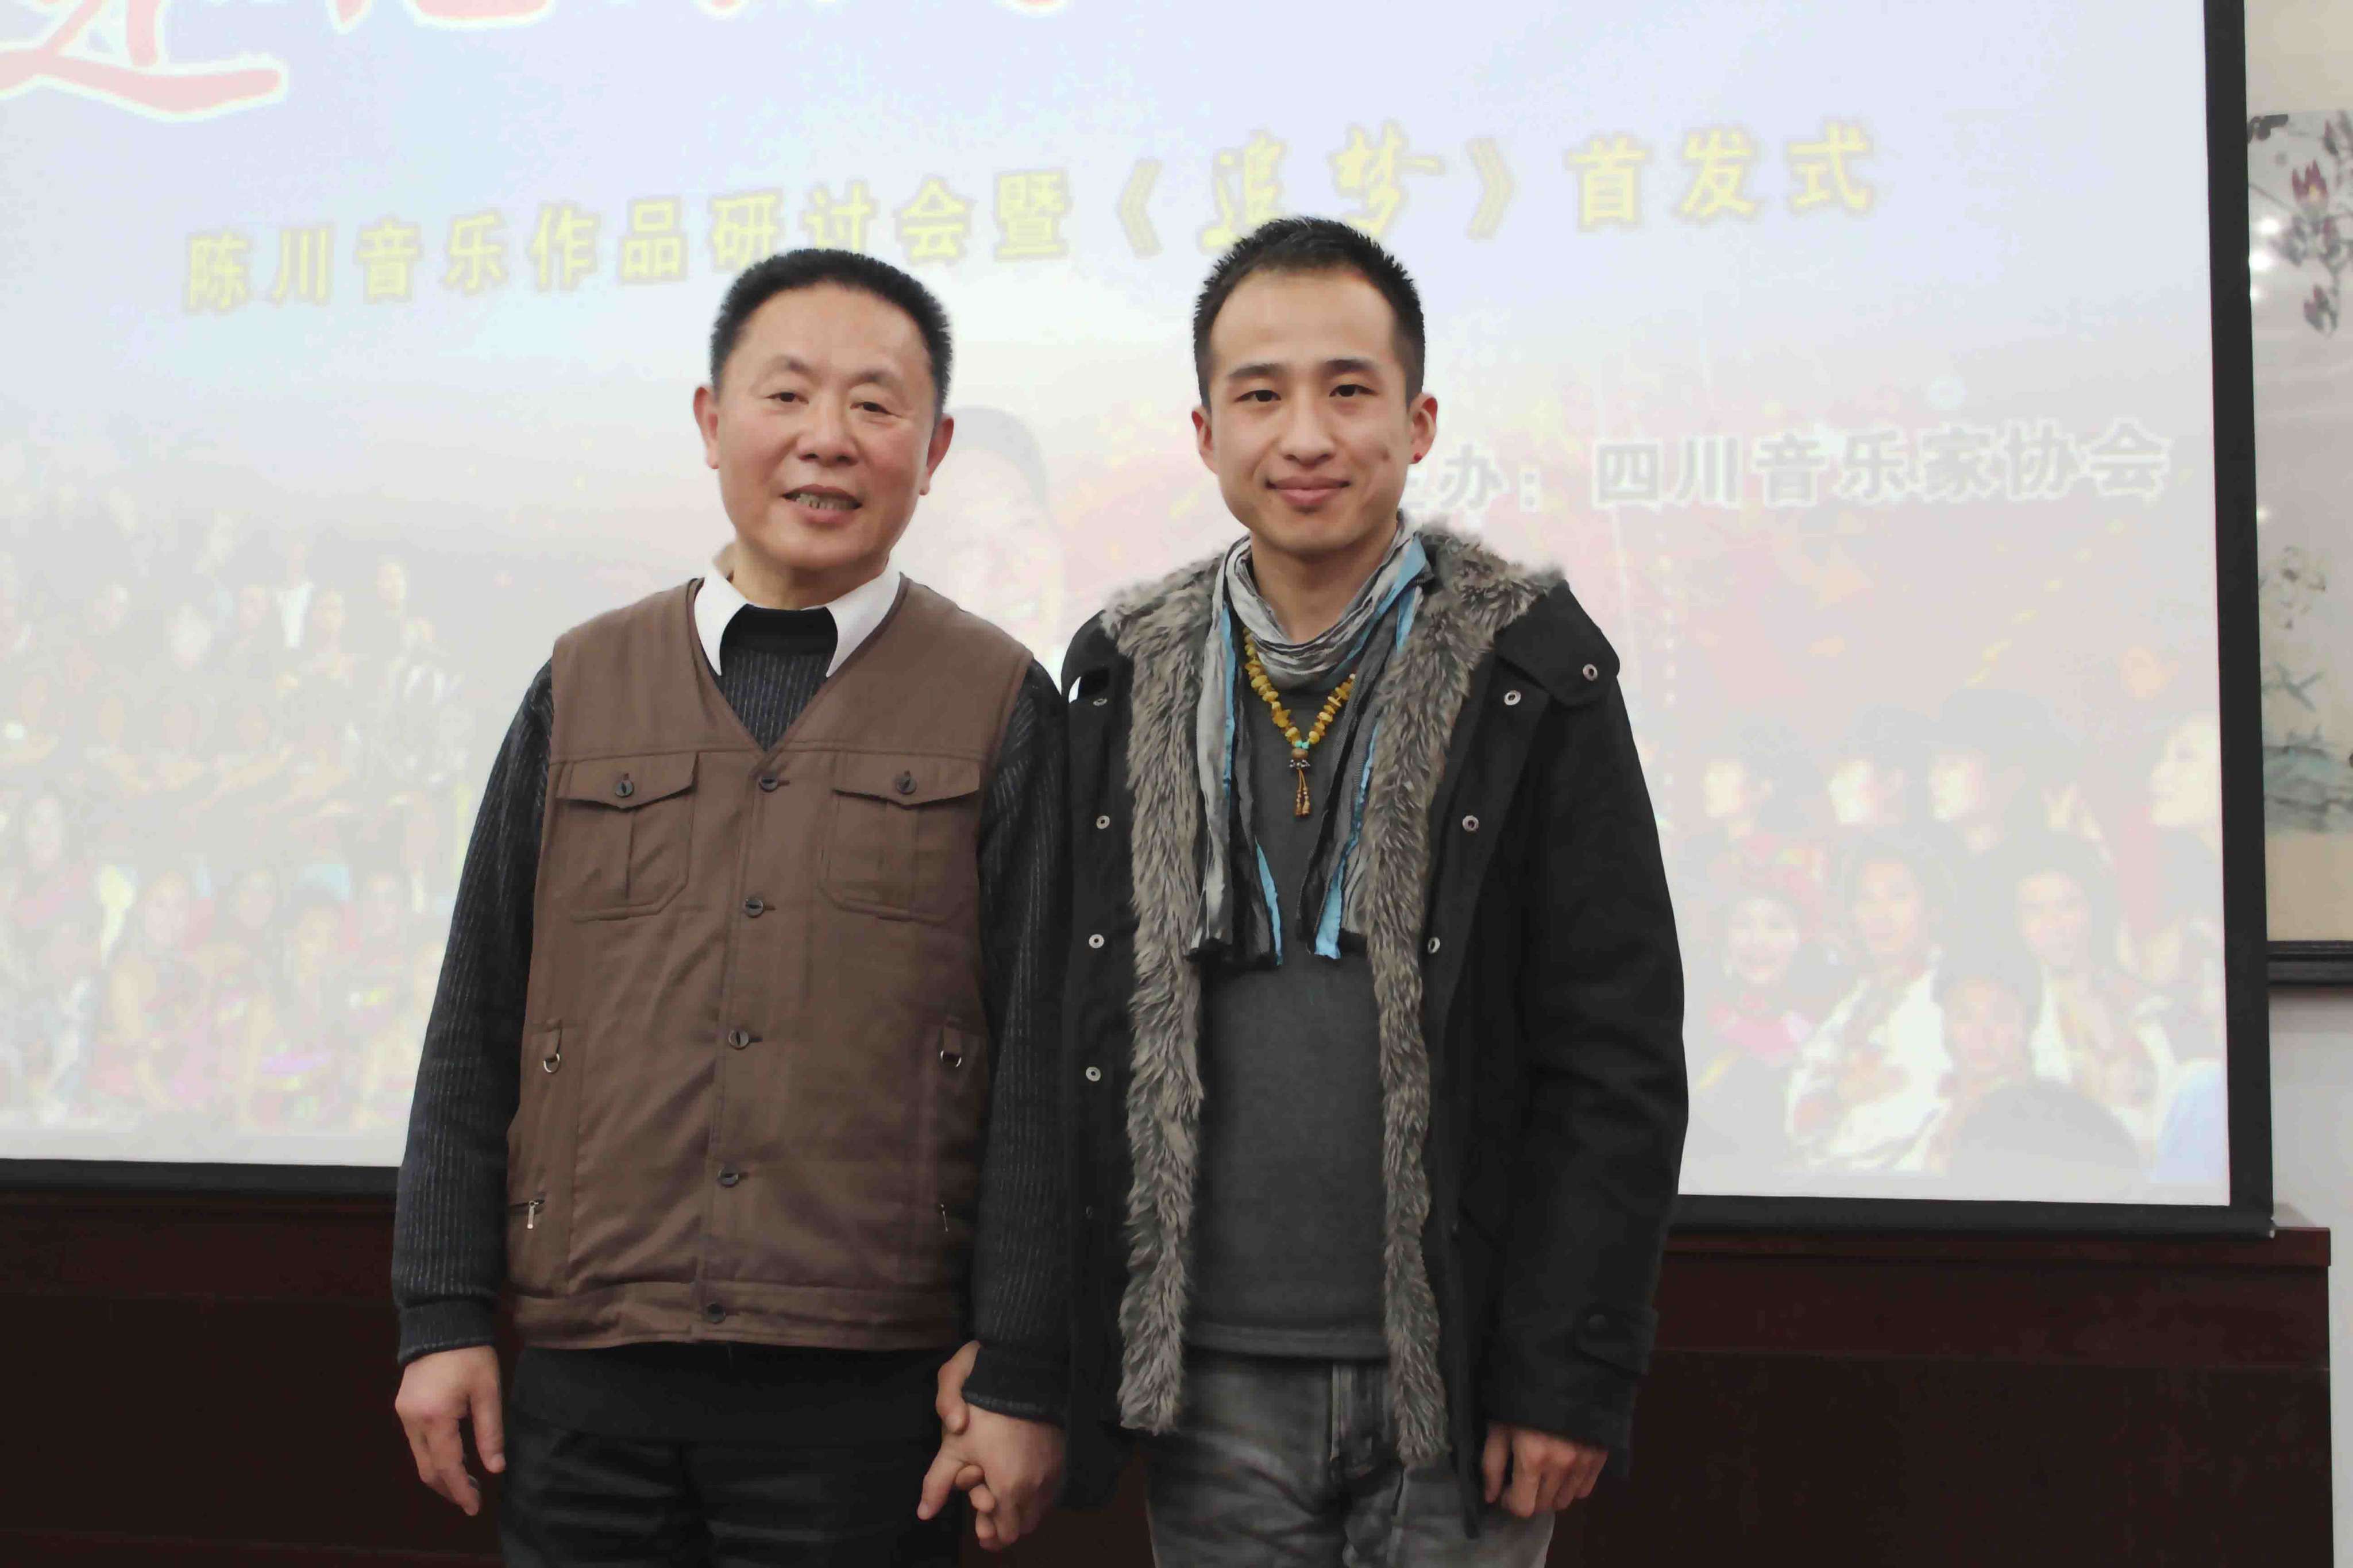 四川省通俗音乐协会主席、作曲家陈川老师